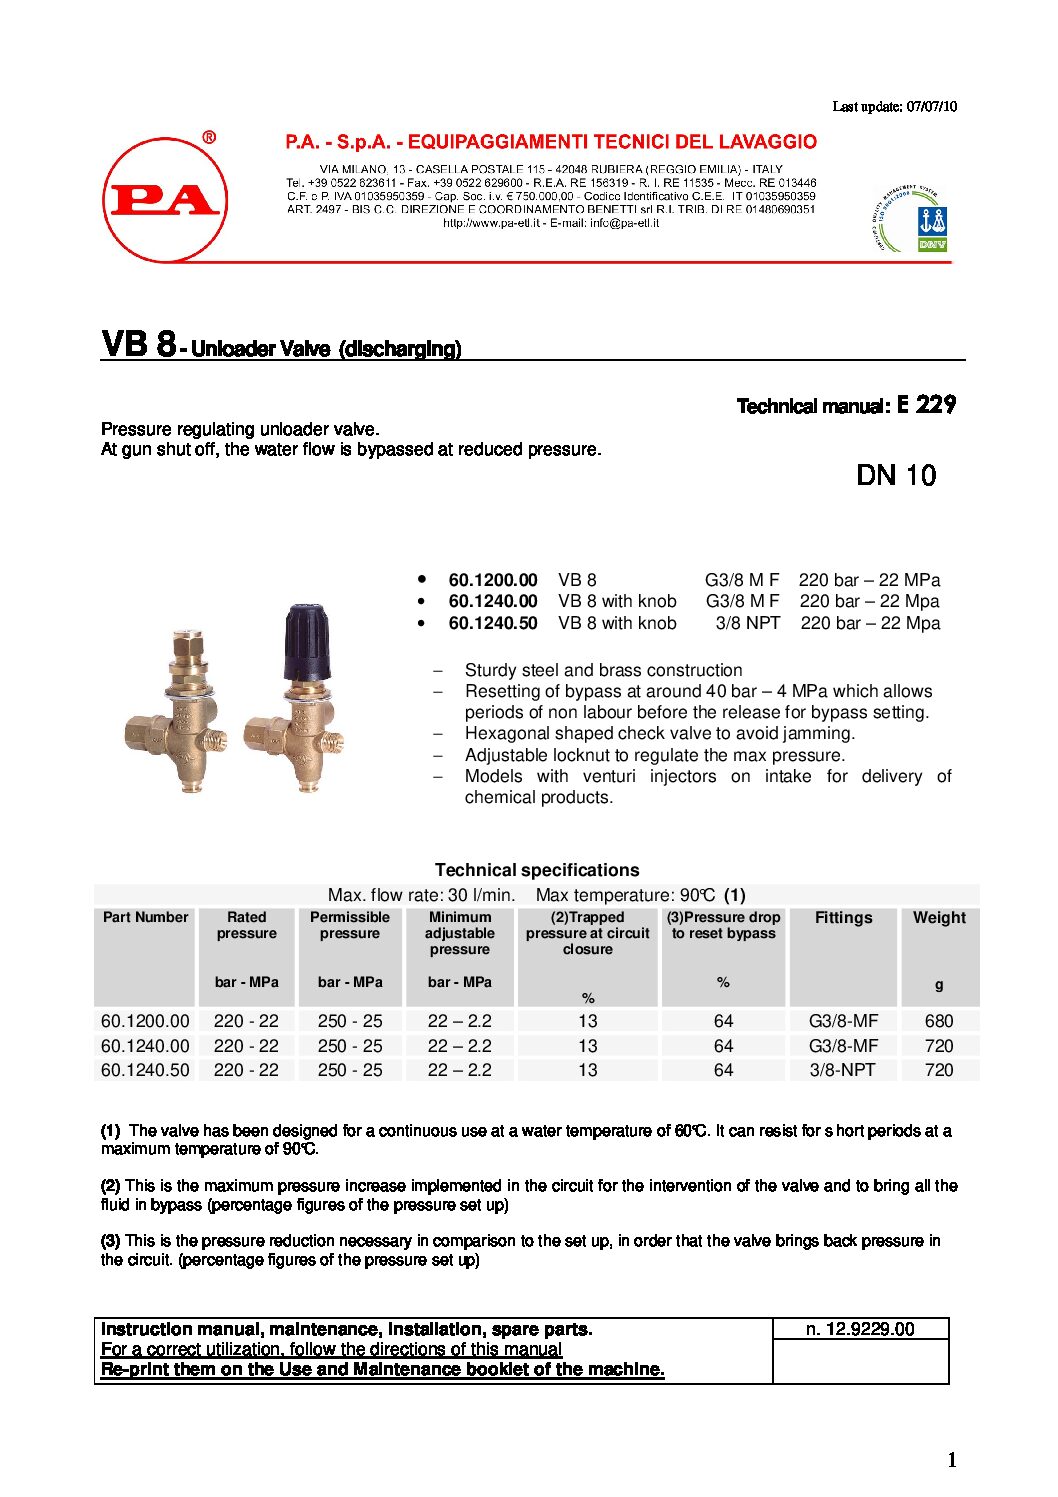 PA VB8 Unloader technical manual